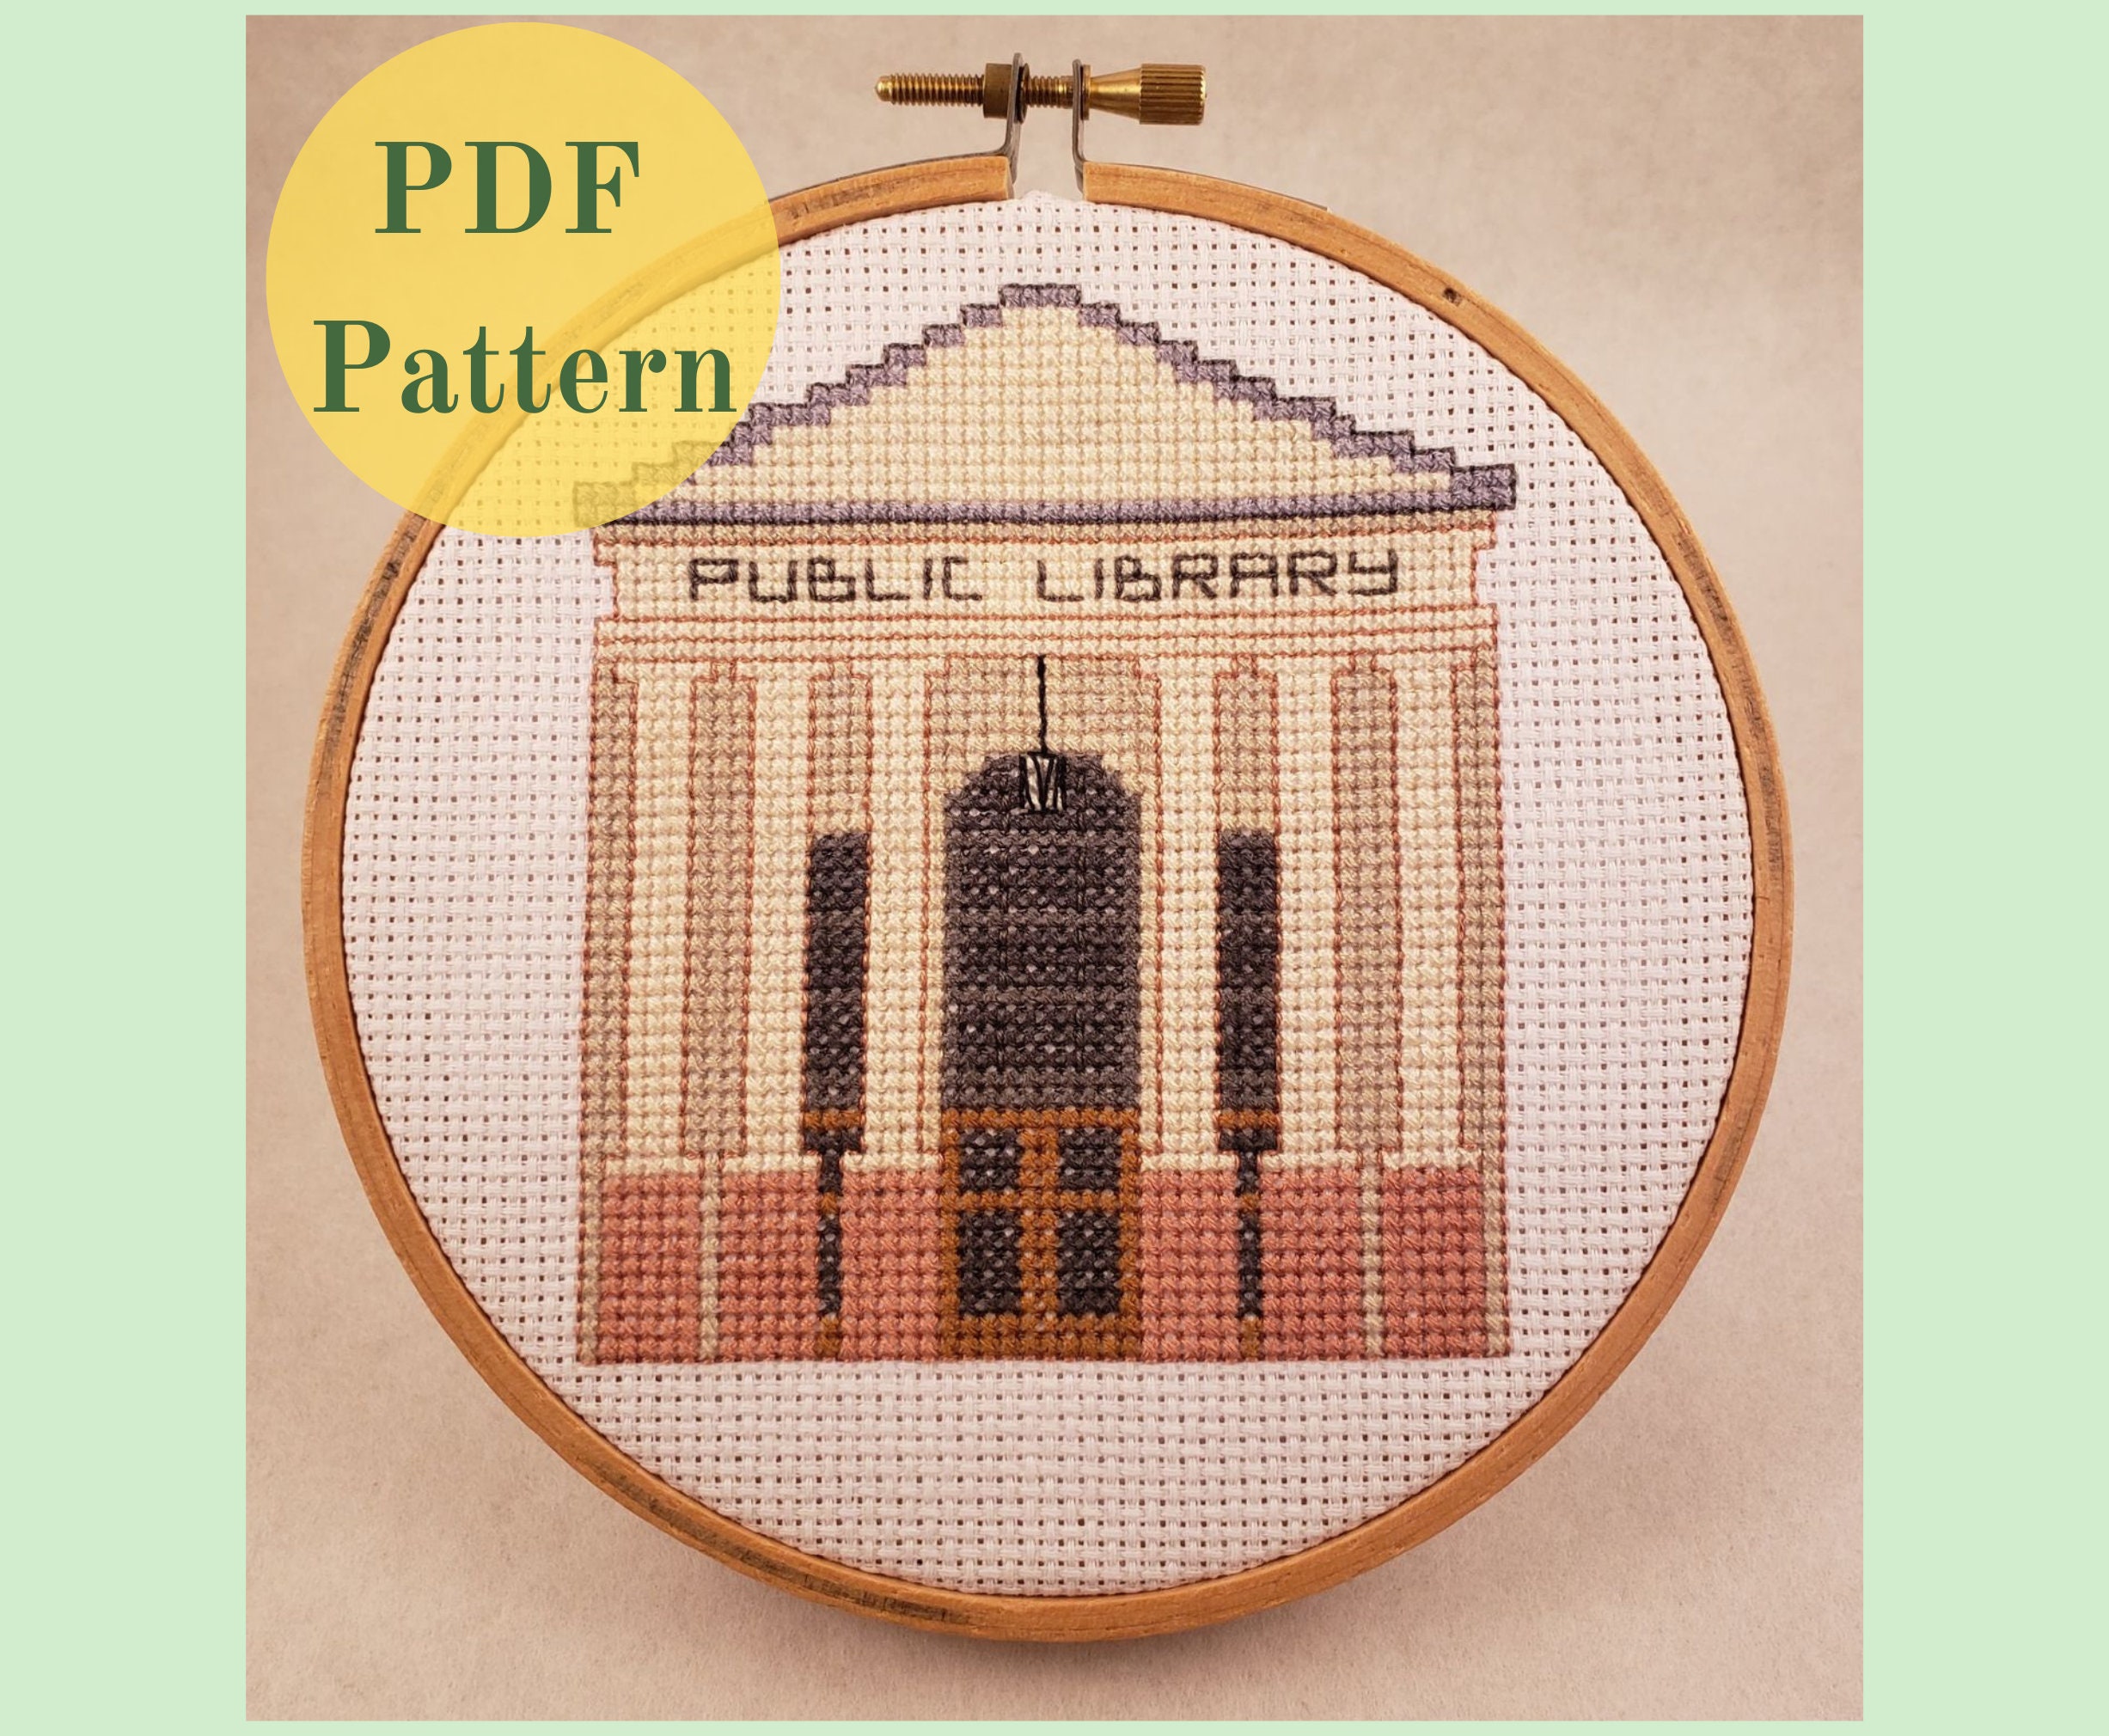 Library Cross Stitch Pattern, Books Cross Stitch Pattern